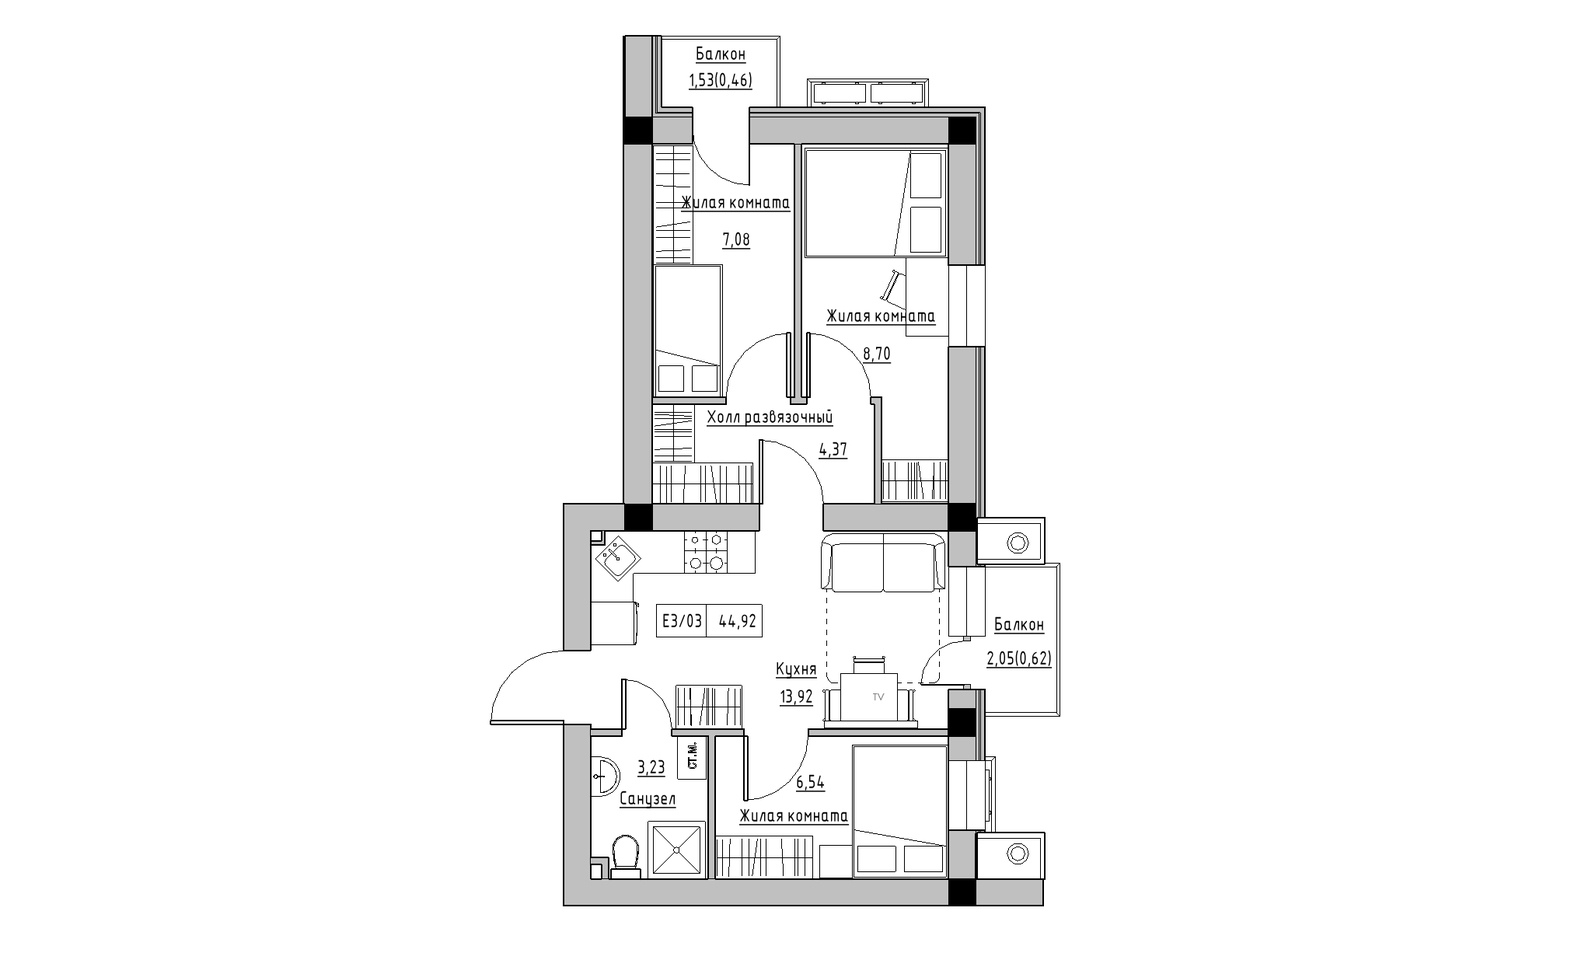 Планировка 3-к квартира площей 44.92м2, KS-014-05/0011.